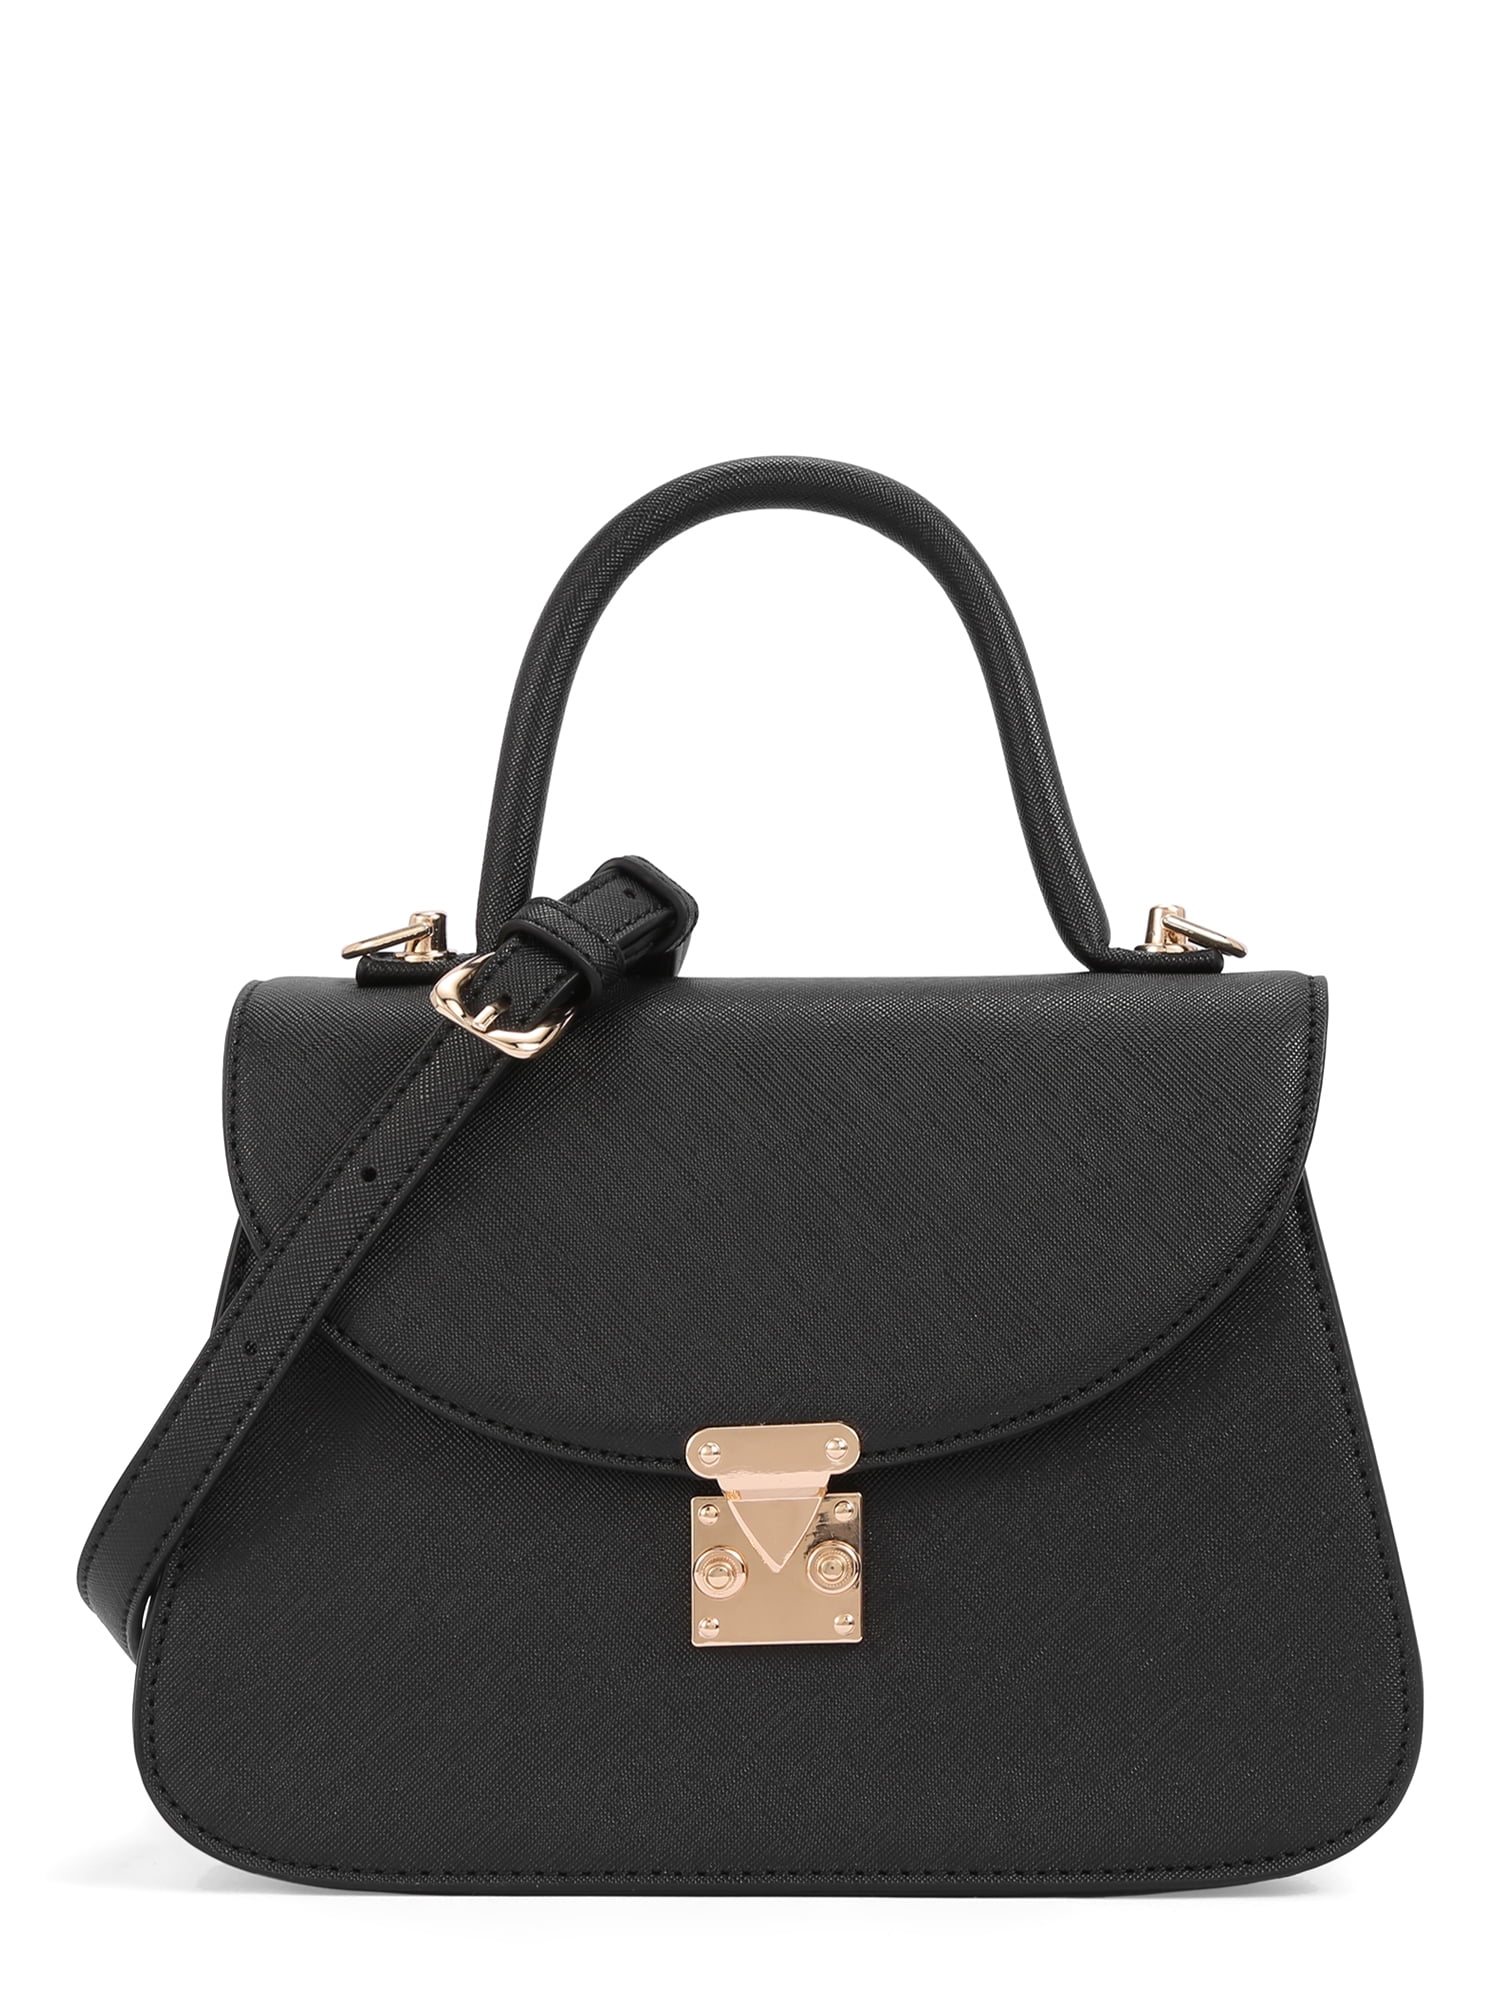 BeCool Women's Adult Top Handle Satchel Handbag Black - Walmart.com